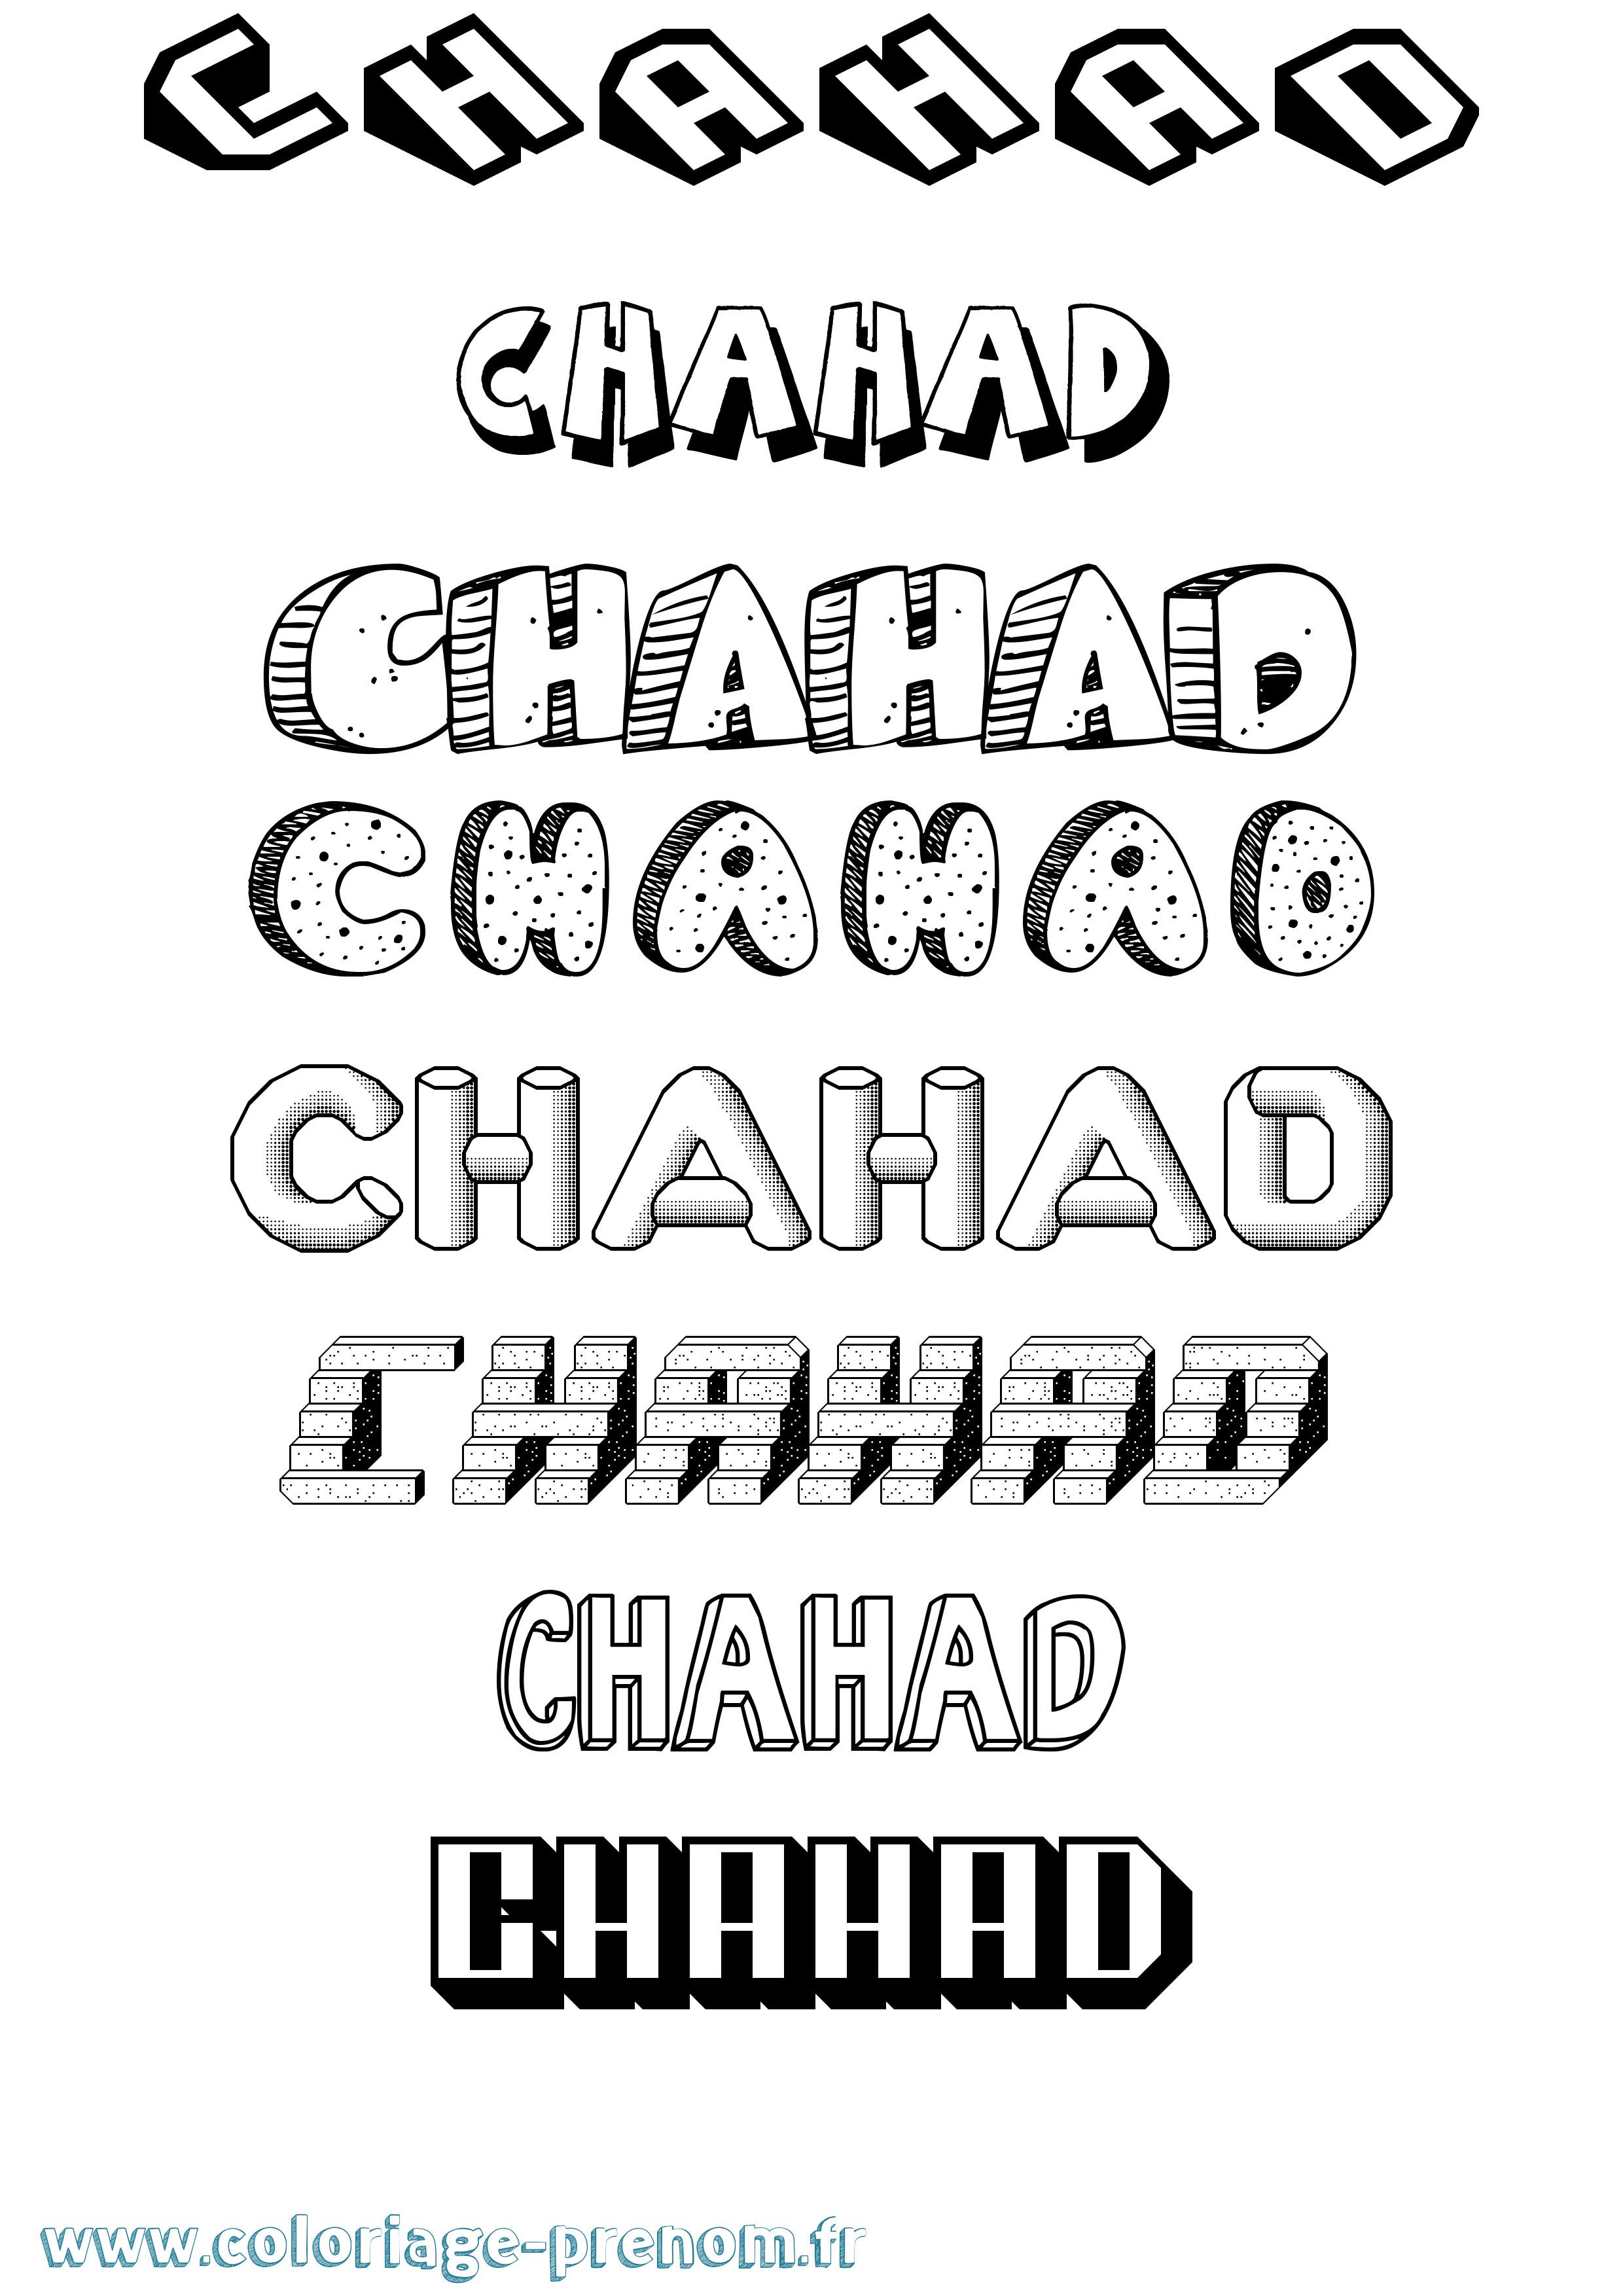 Coloriage prénom Chahad Effet 3D